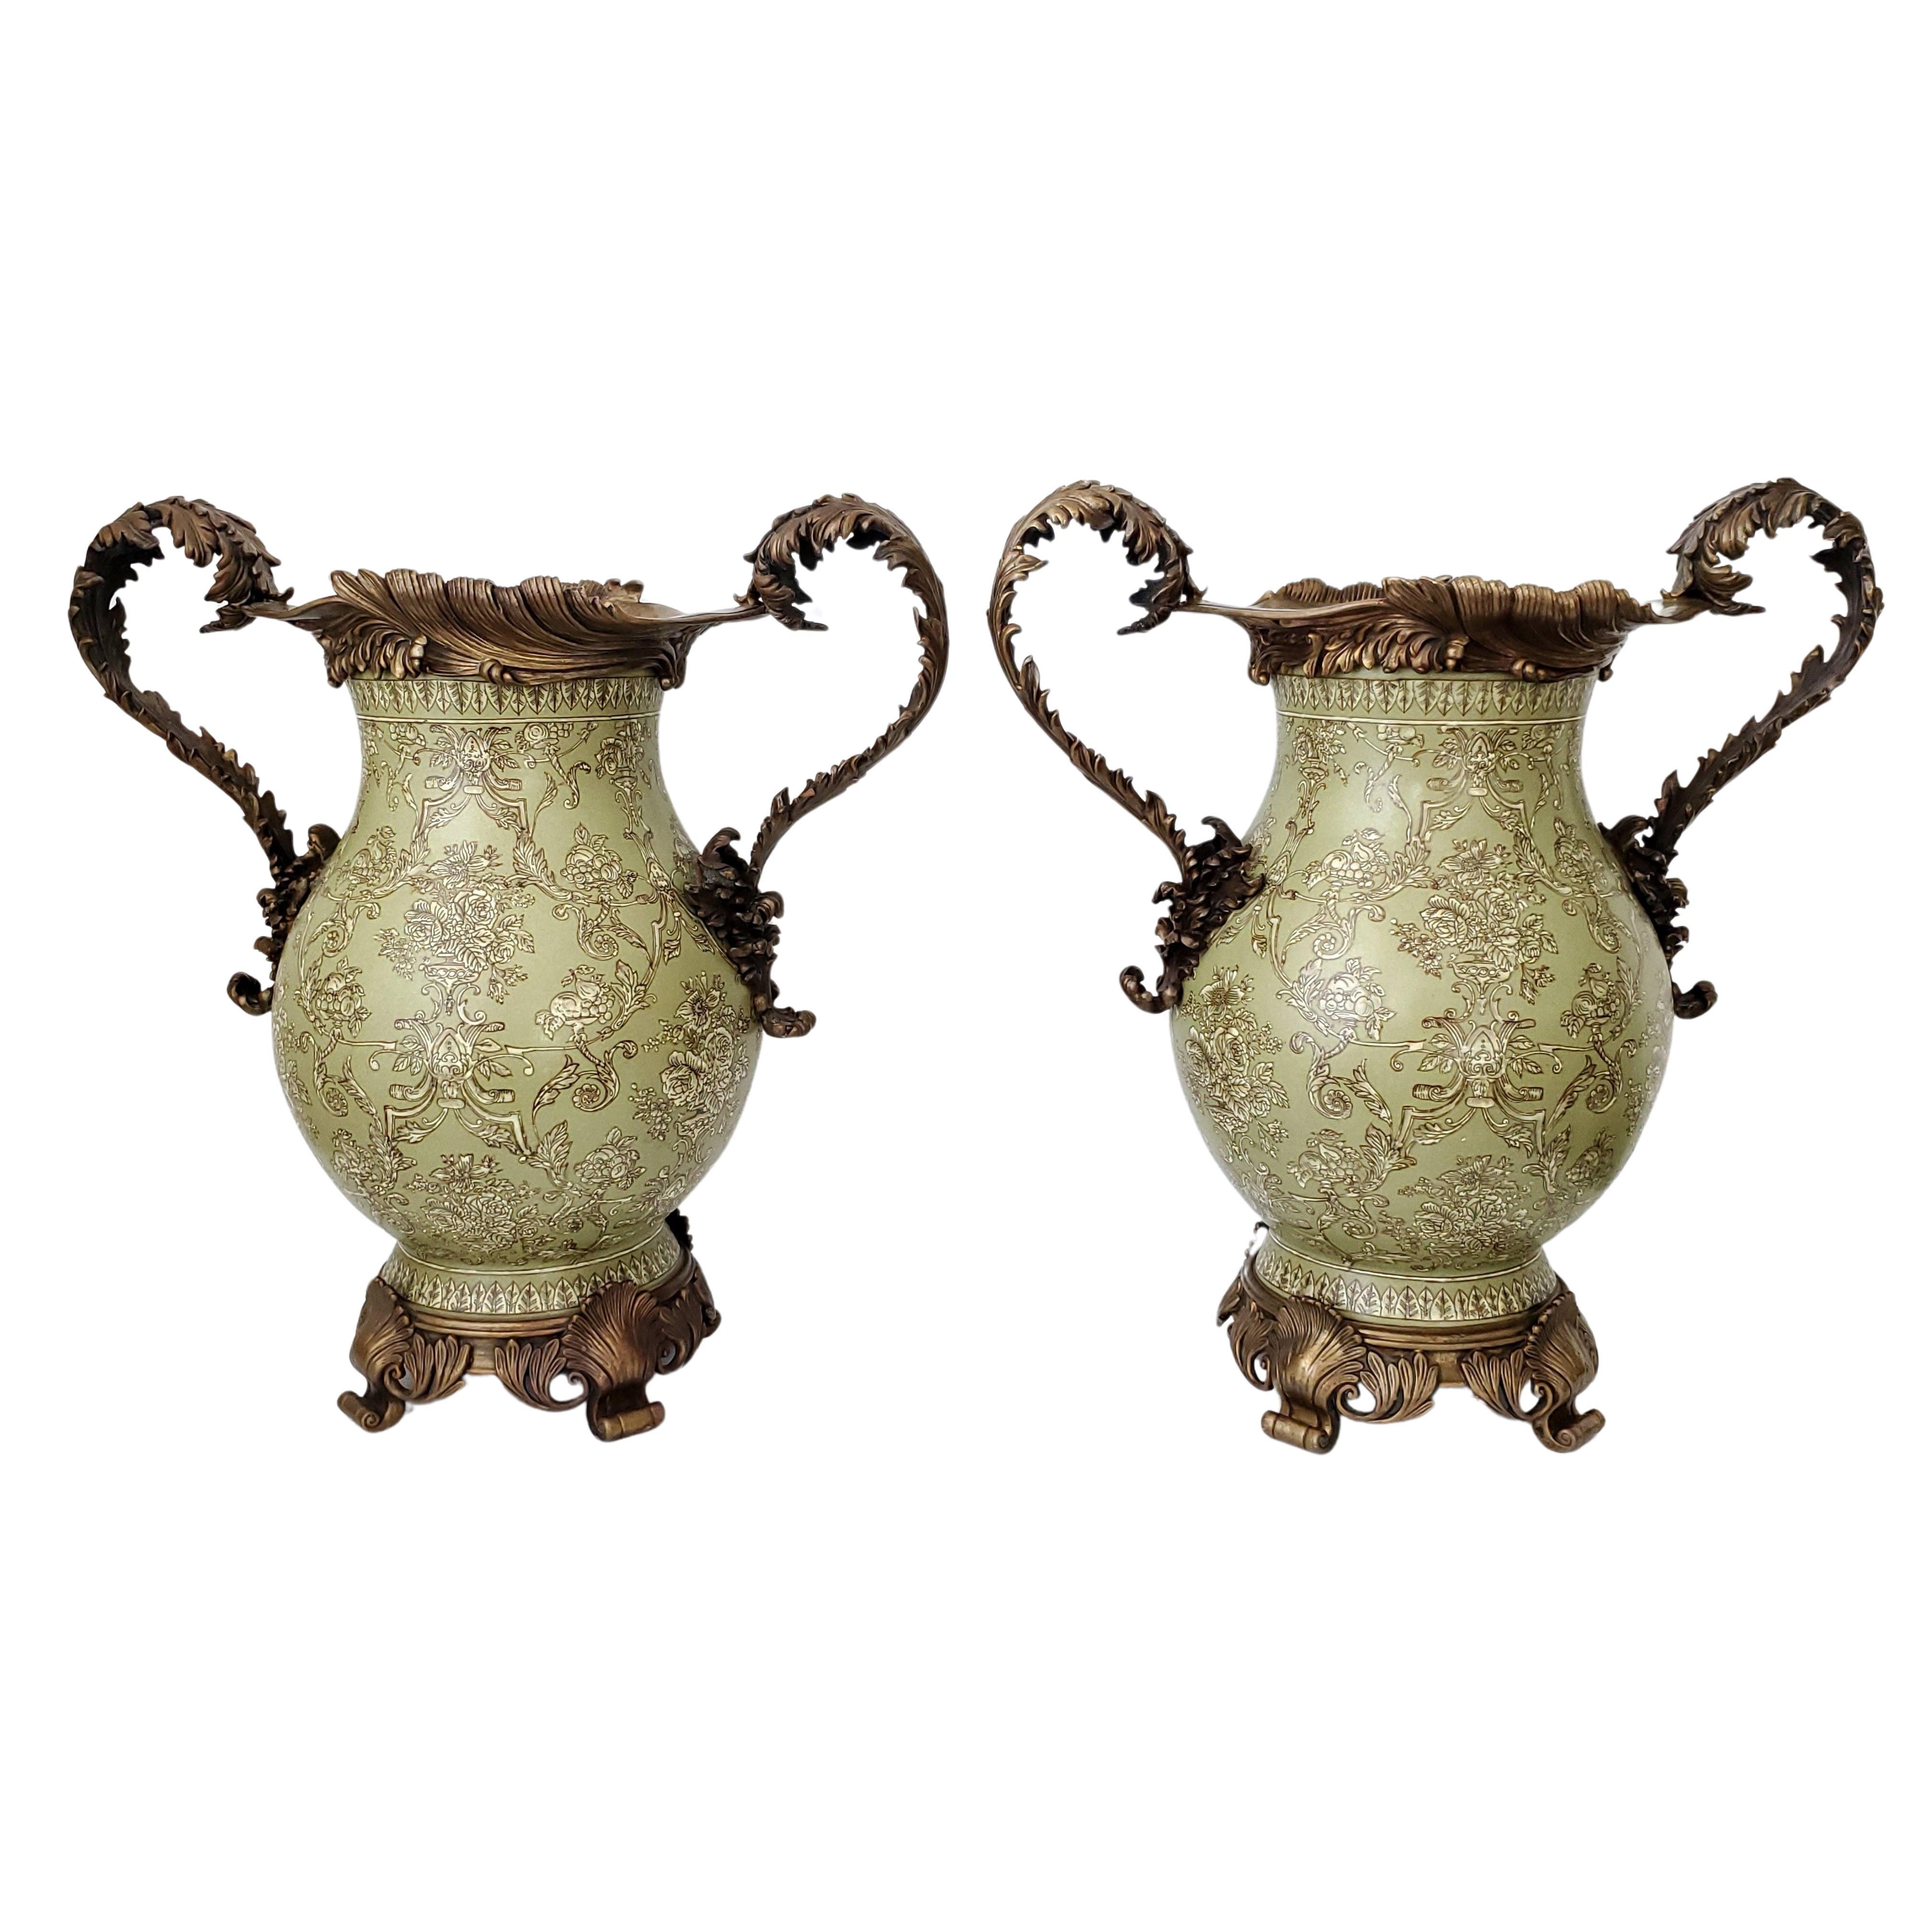 Monumentales Paar Vintage-Urnen im Chinoiserie-Stil, verziert mit verschnörkelten Henkeln, Sockeln und Rändern im Ormolu-Stil aus Messing, ca. 1970er Jahre. 
Der Korpus der großen Urnen besteht aus schwerem Porzellan mit komplizierten Mustern aus